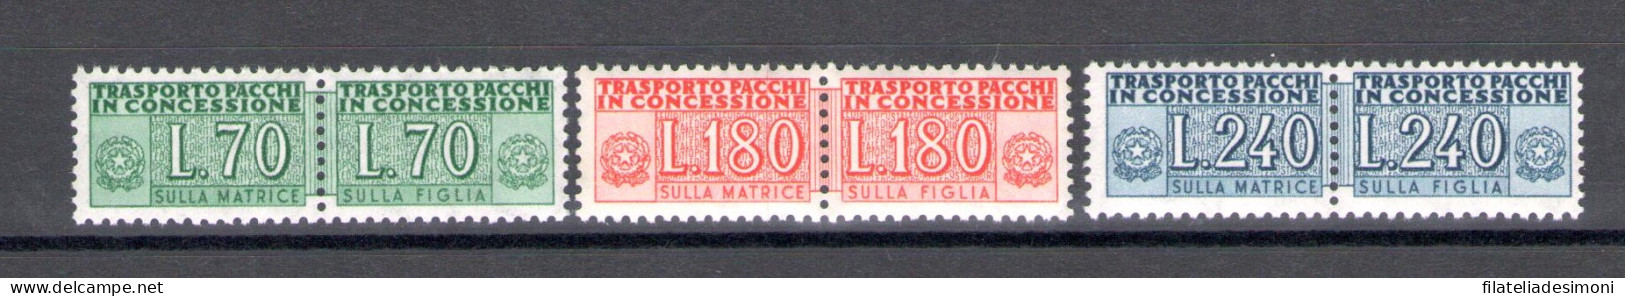 1966 Italia - Repubblica Pacchi Concessione 70-180-240 Lire - N. 15/17 - MNH** - Colis-concession